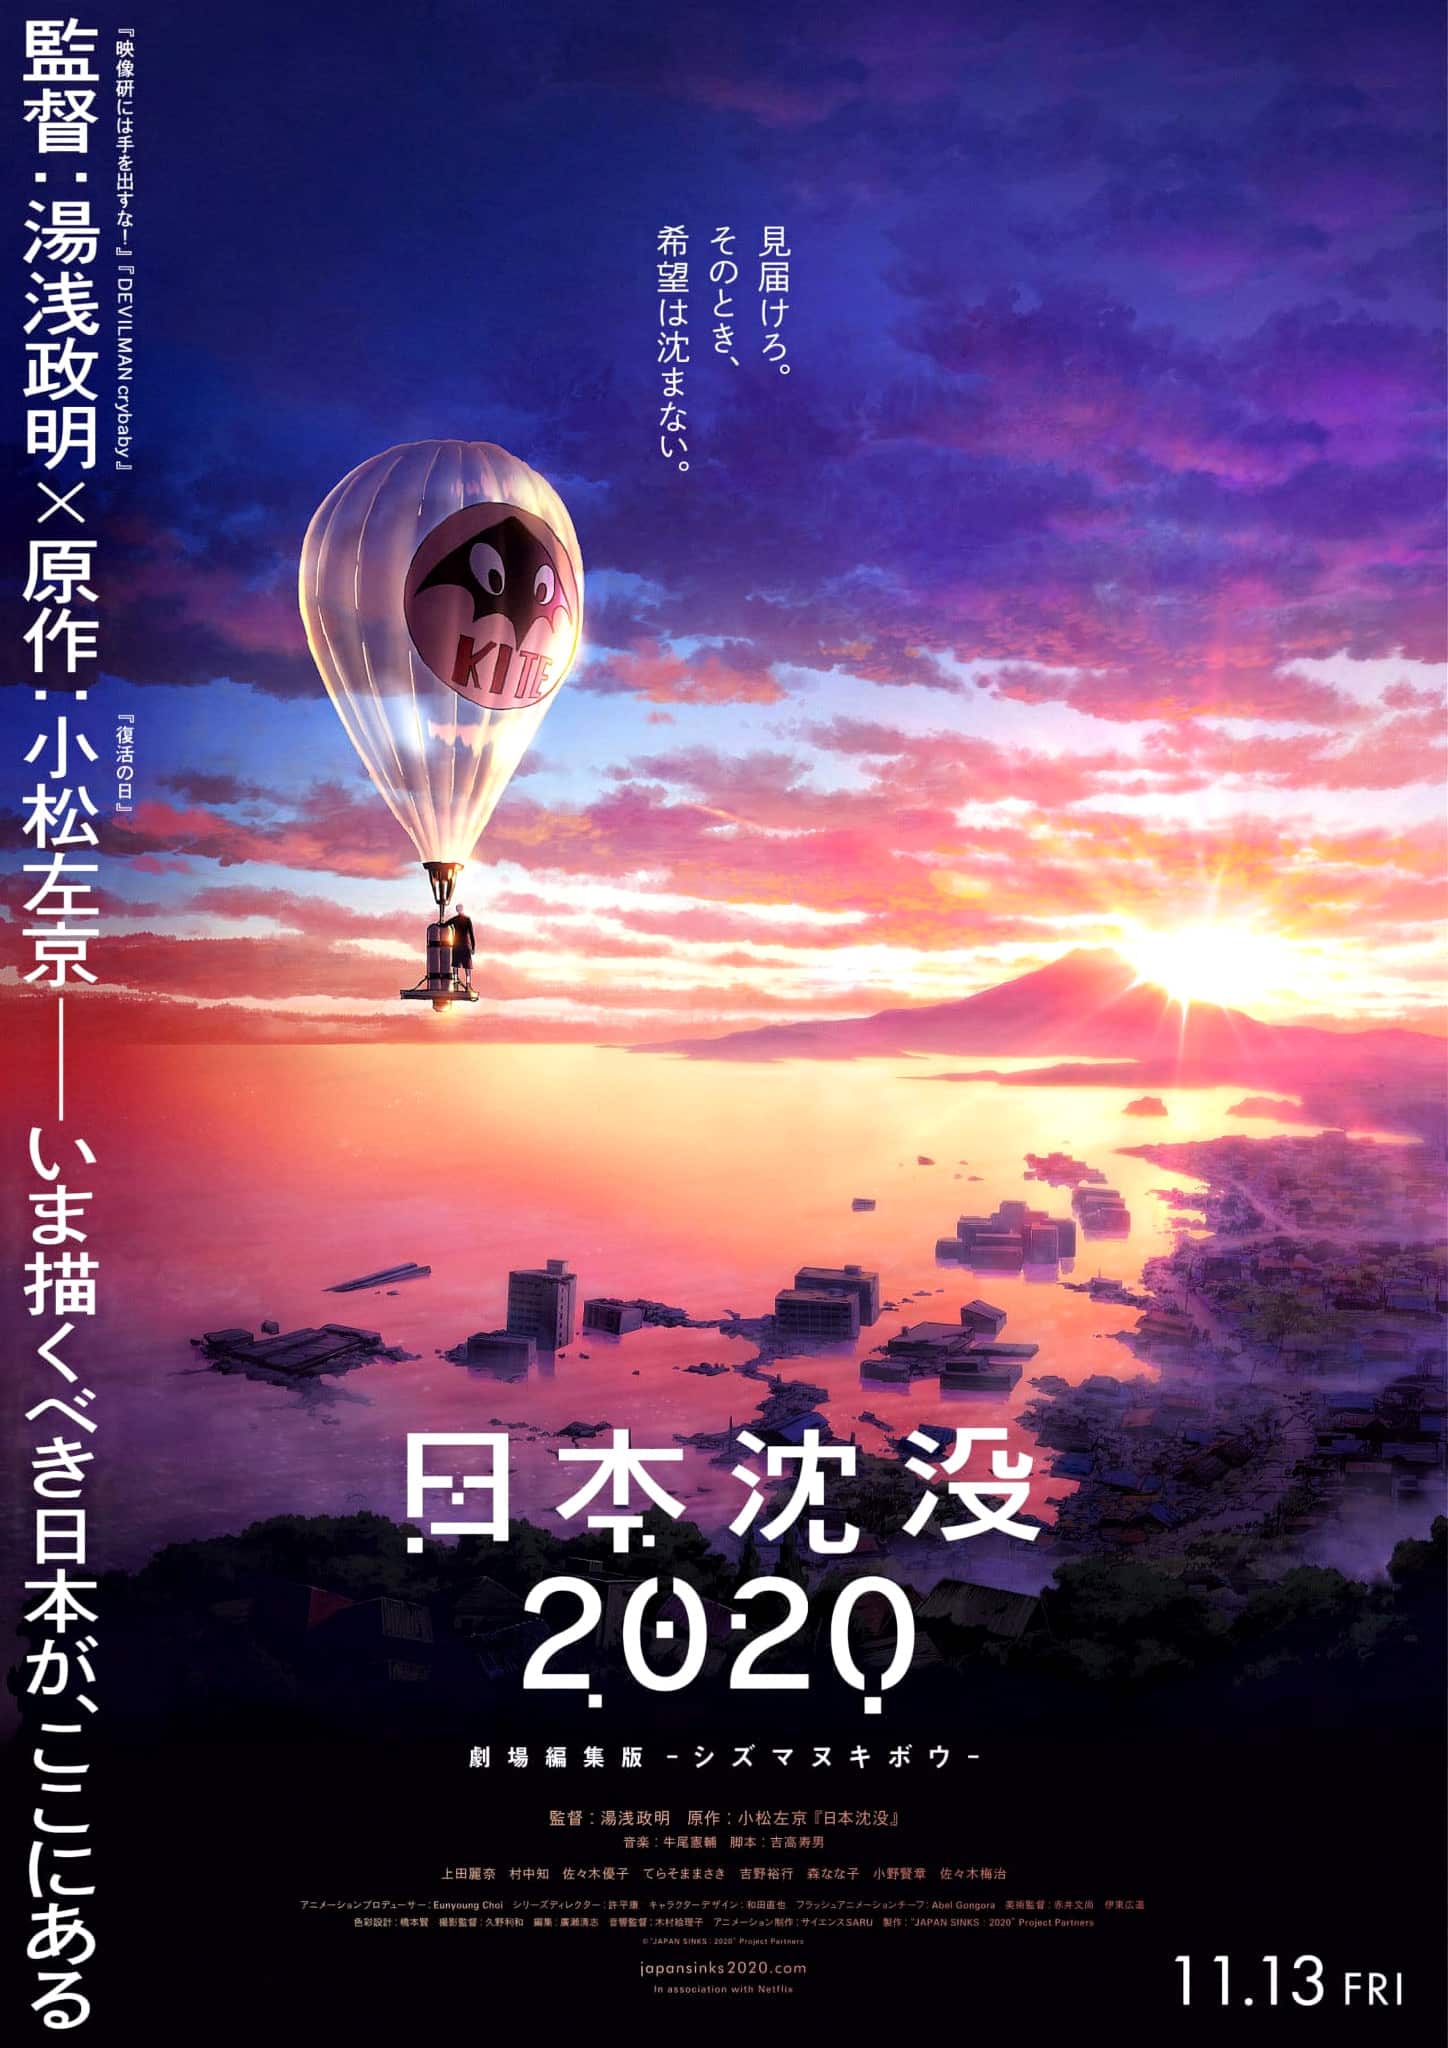 Annonce du film Japan Sinks 2020 parmi les animes automne 2020